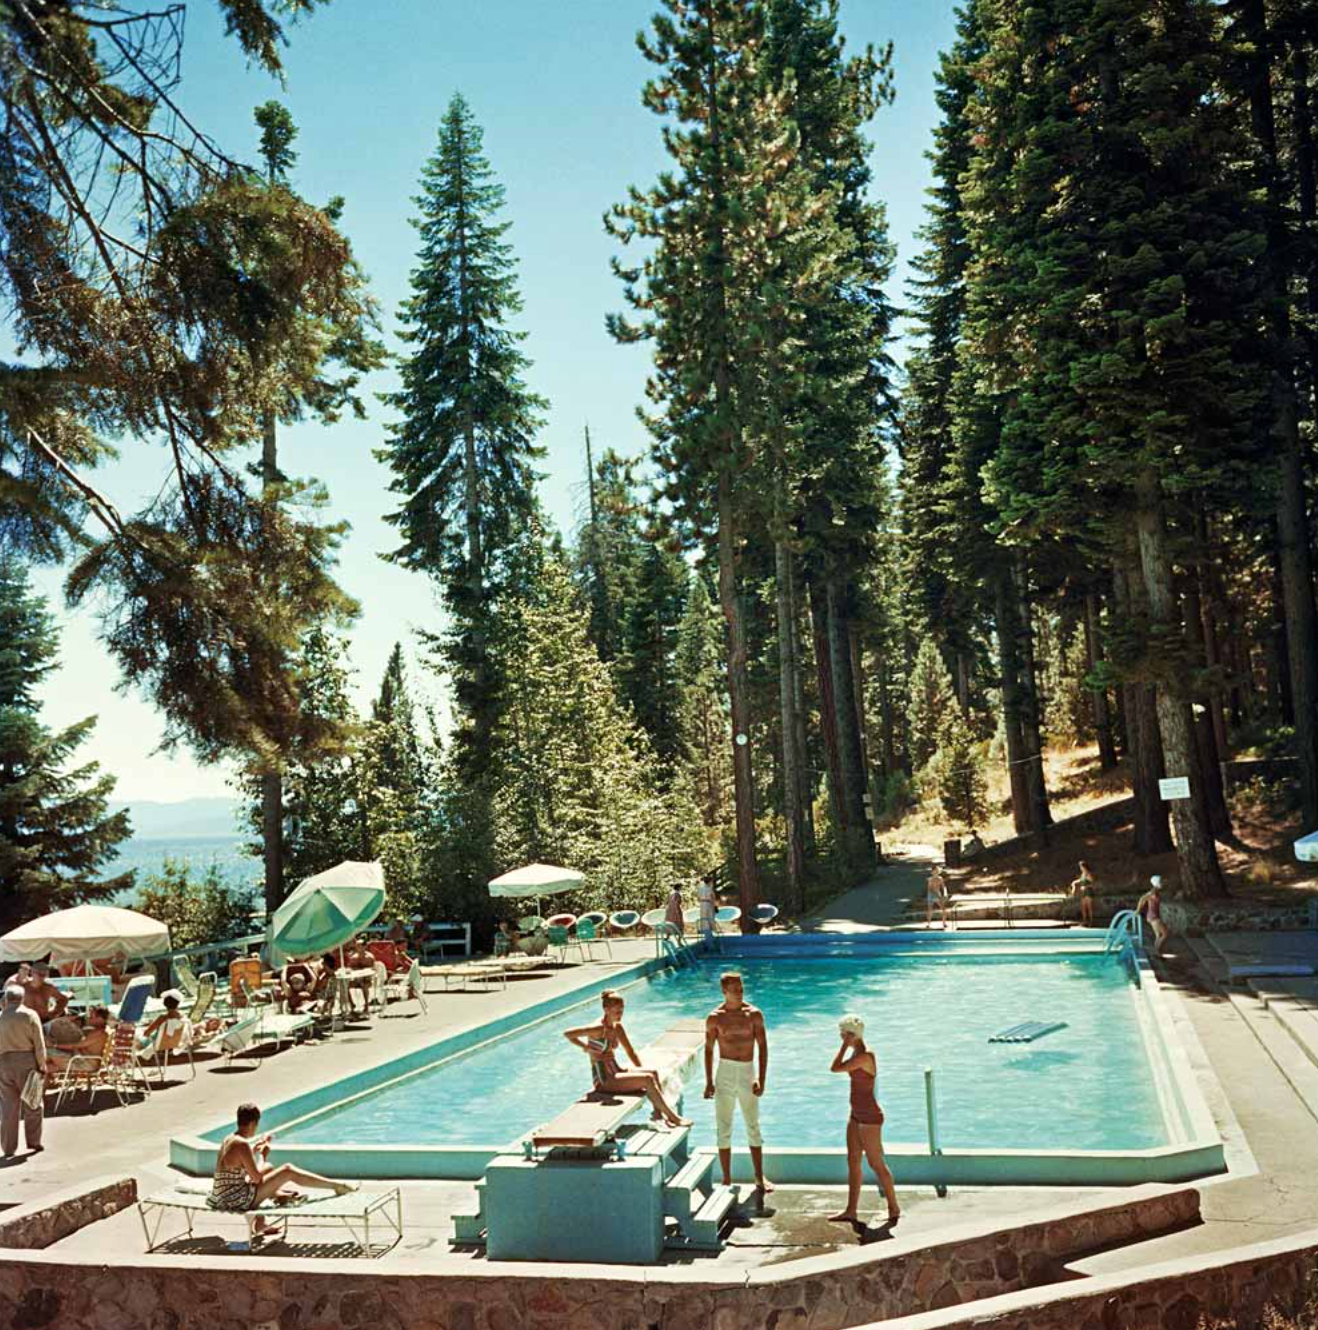 Pool At Lake Tahoe Print by Slim Aarons